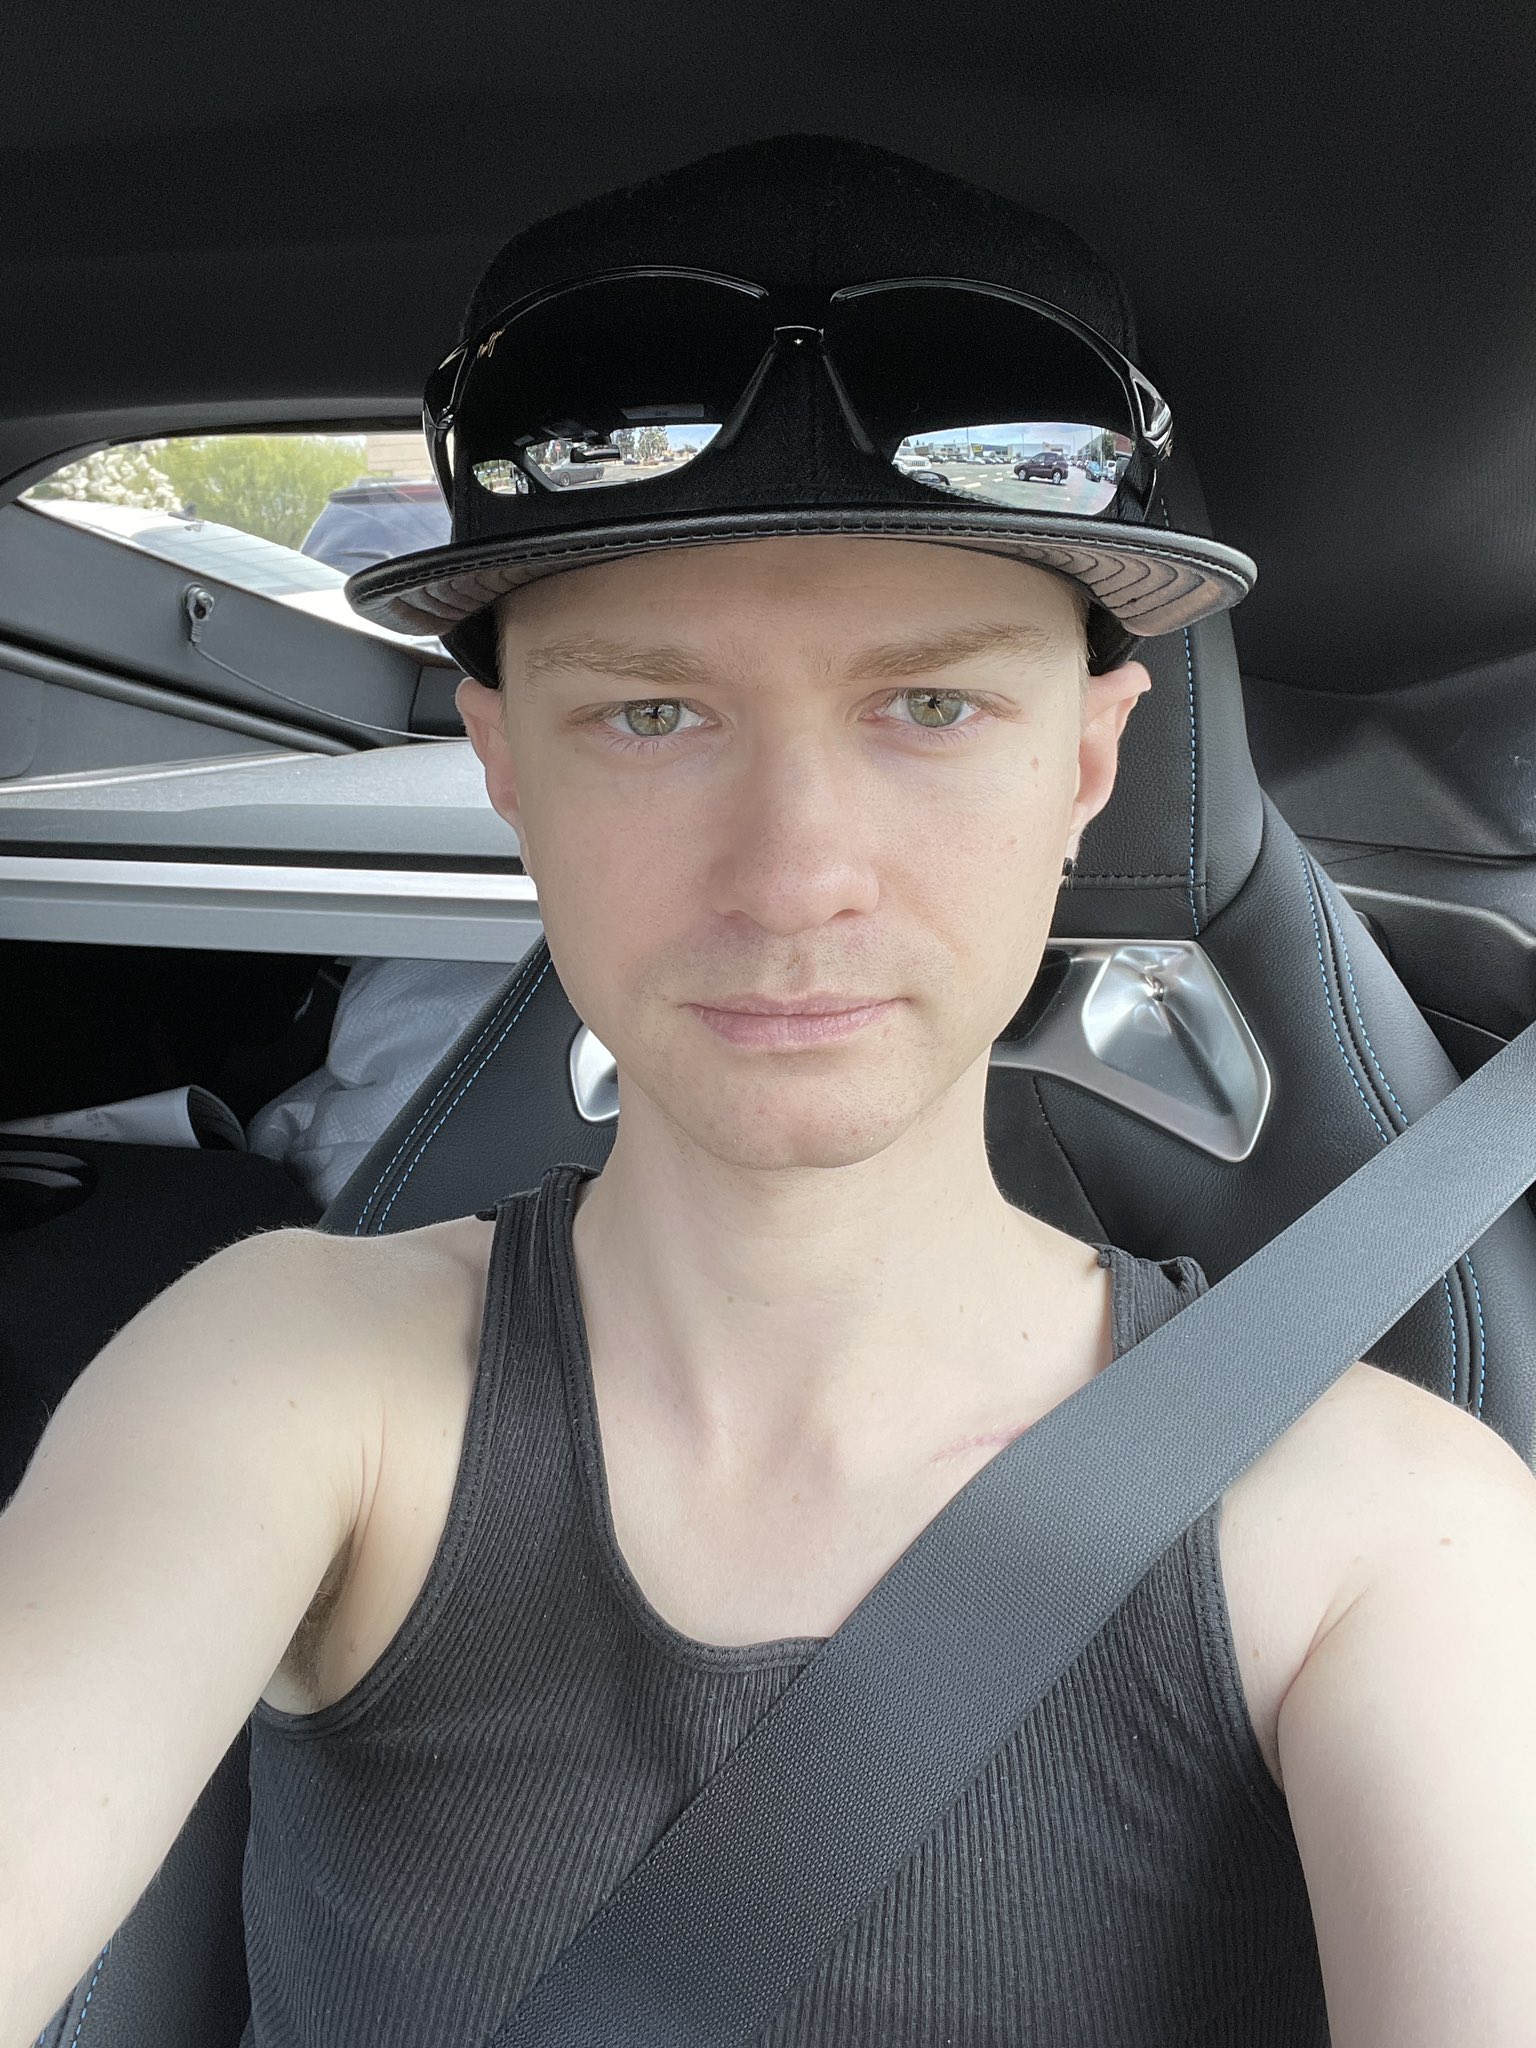 Tw Pornstars Alex Jett Twitter Car Selfie 7 21 Pm 29 Jun 2021